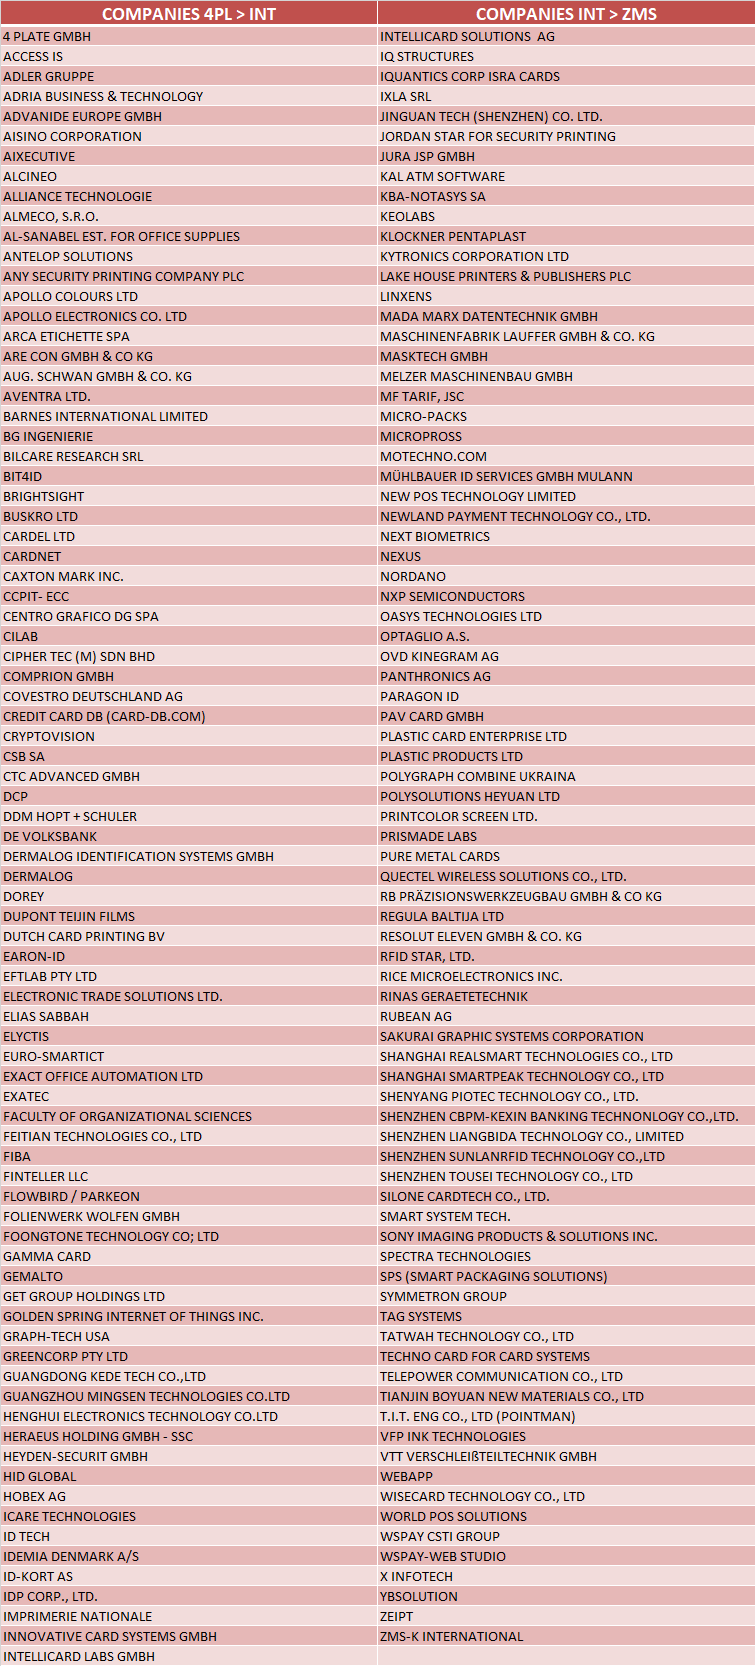 Liste des sociétés déjà enregistrées à TRUSTECH 2019